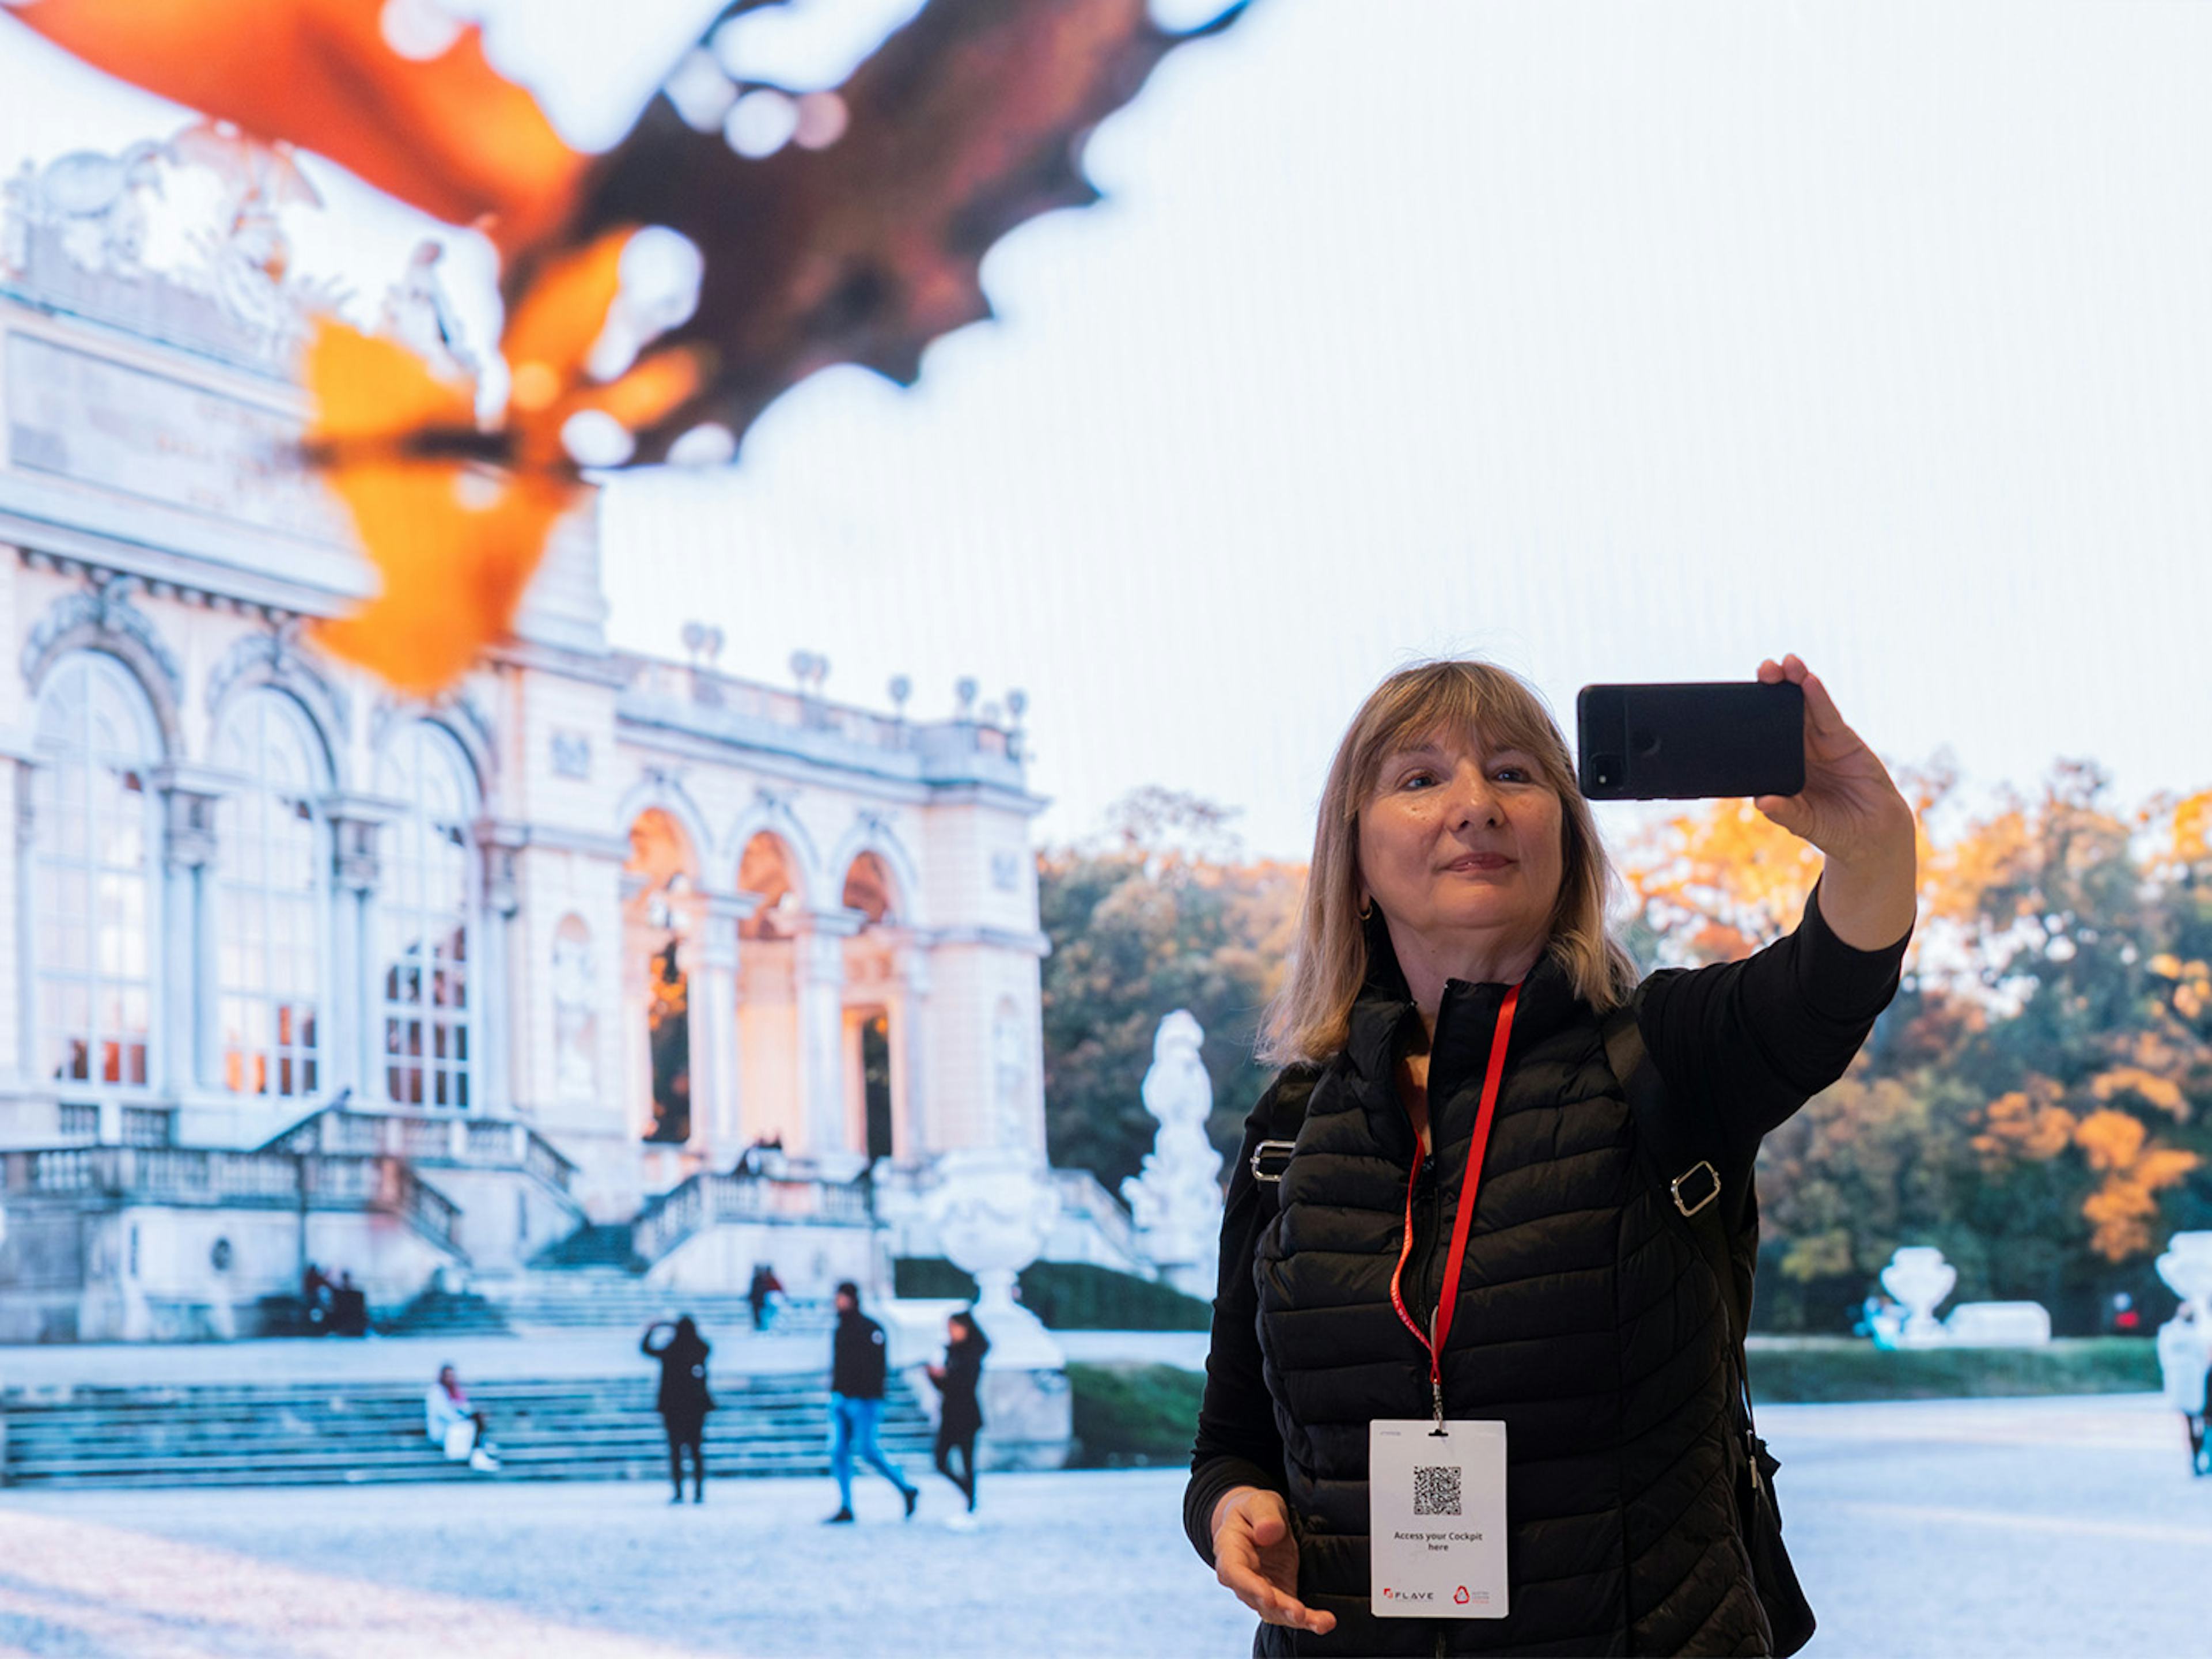 Frau posiert fuer Selfie vor einer LED-Wand, auf der die Gloriette in Park Schoenbrunn zu sehen ist.